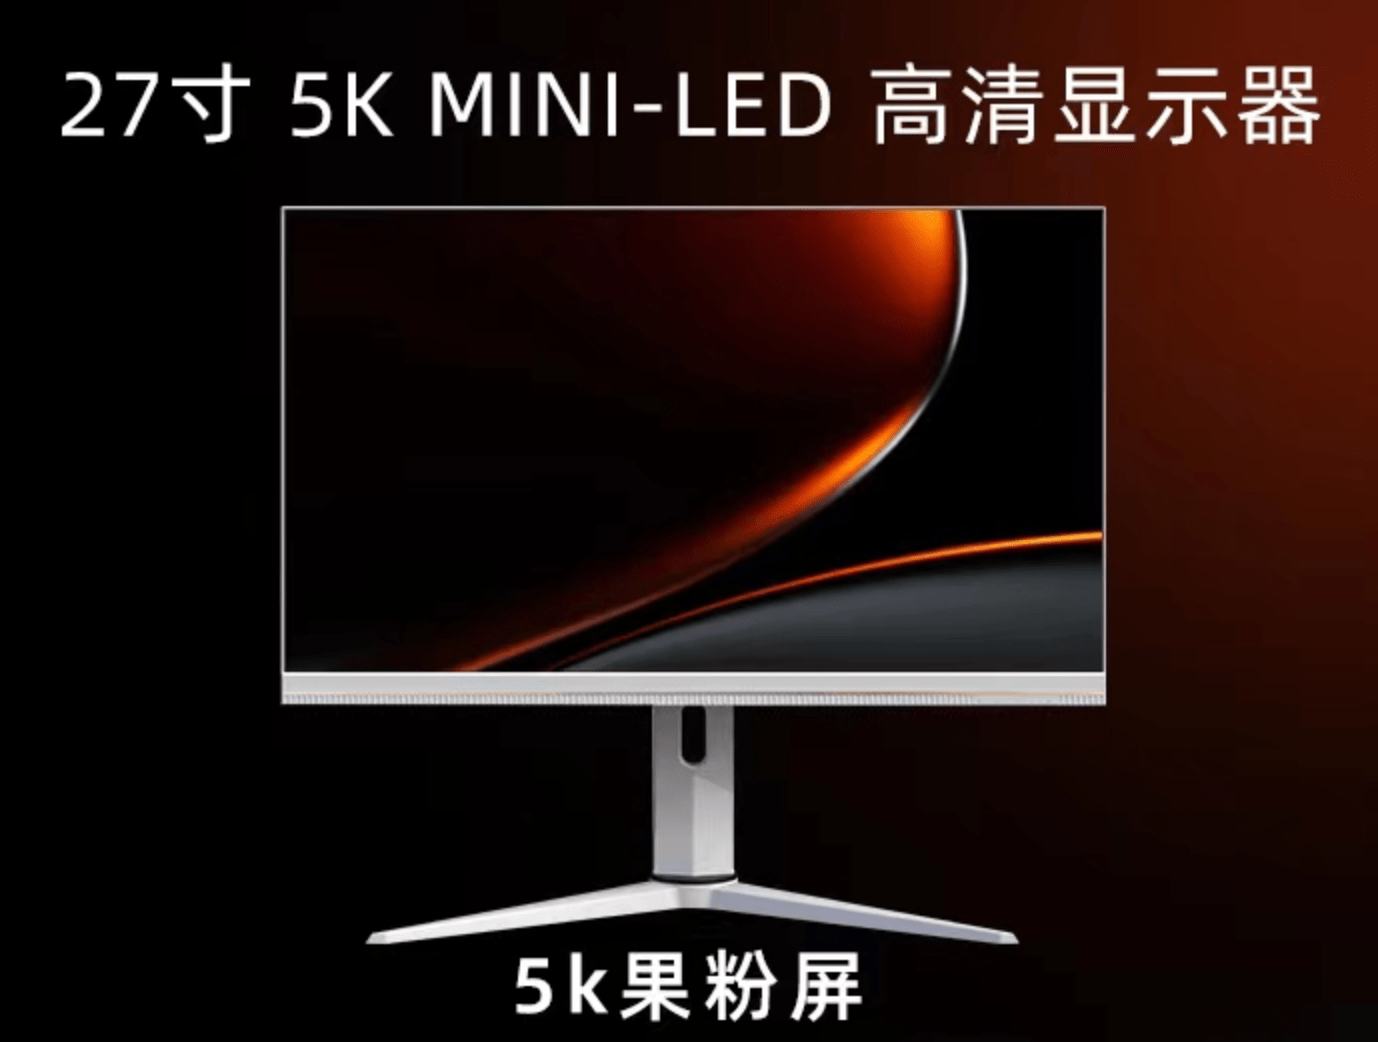 一丁显示推出5K Mini LED显示器，峰值亮度达到1400尼特